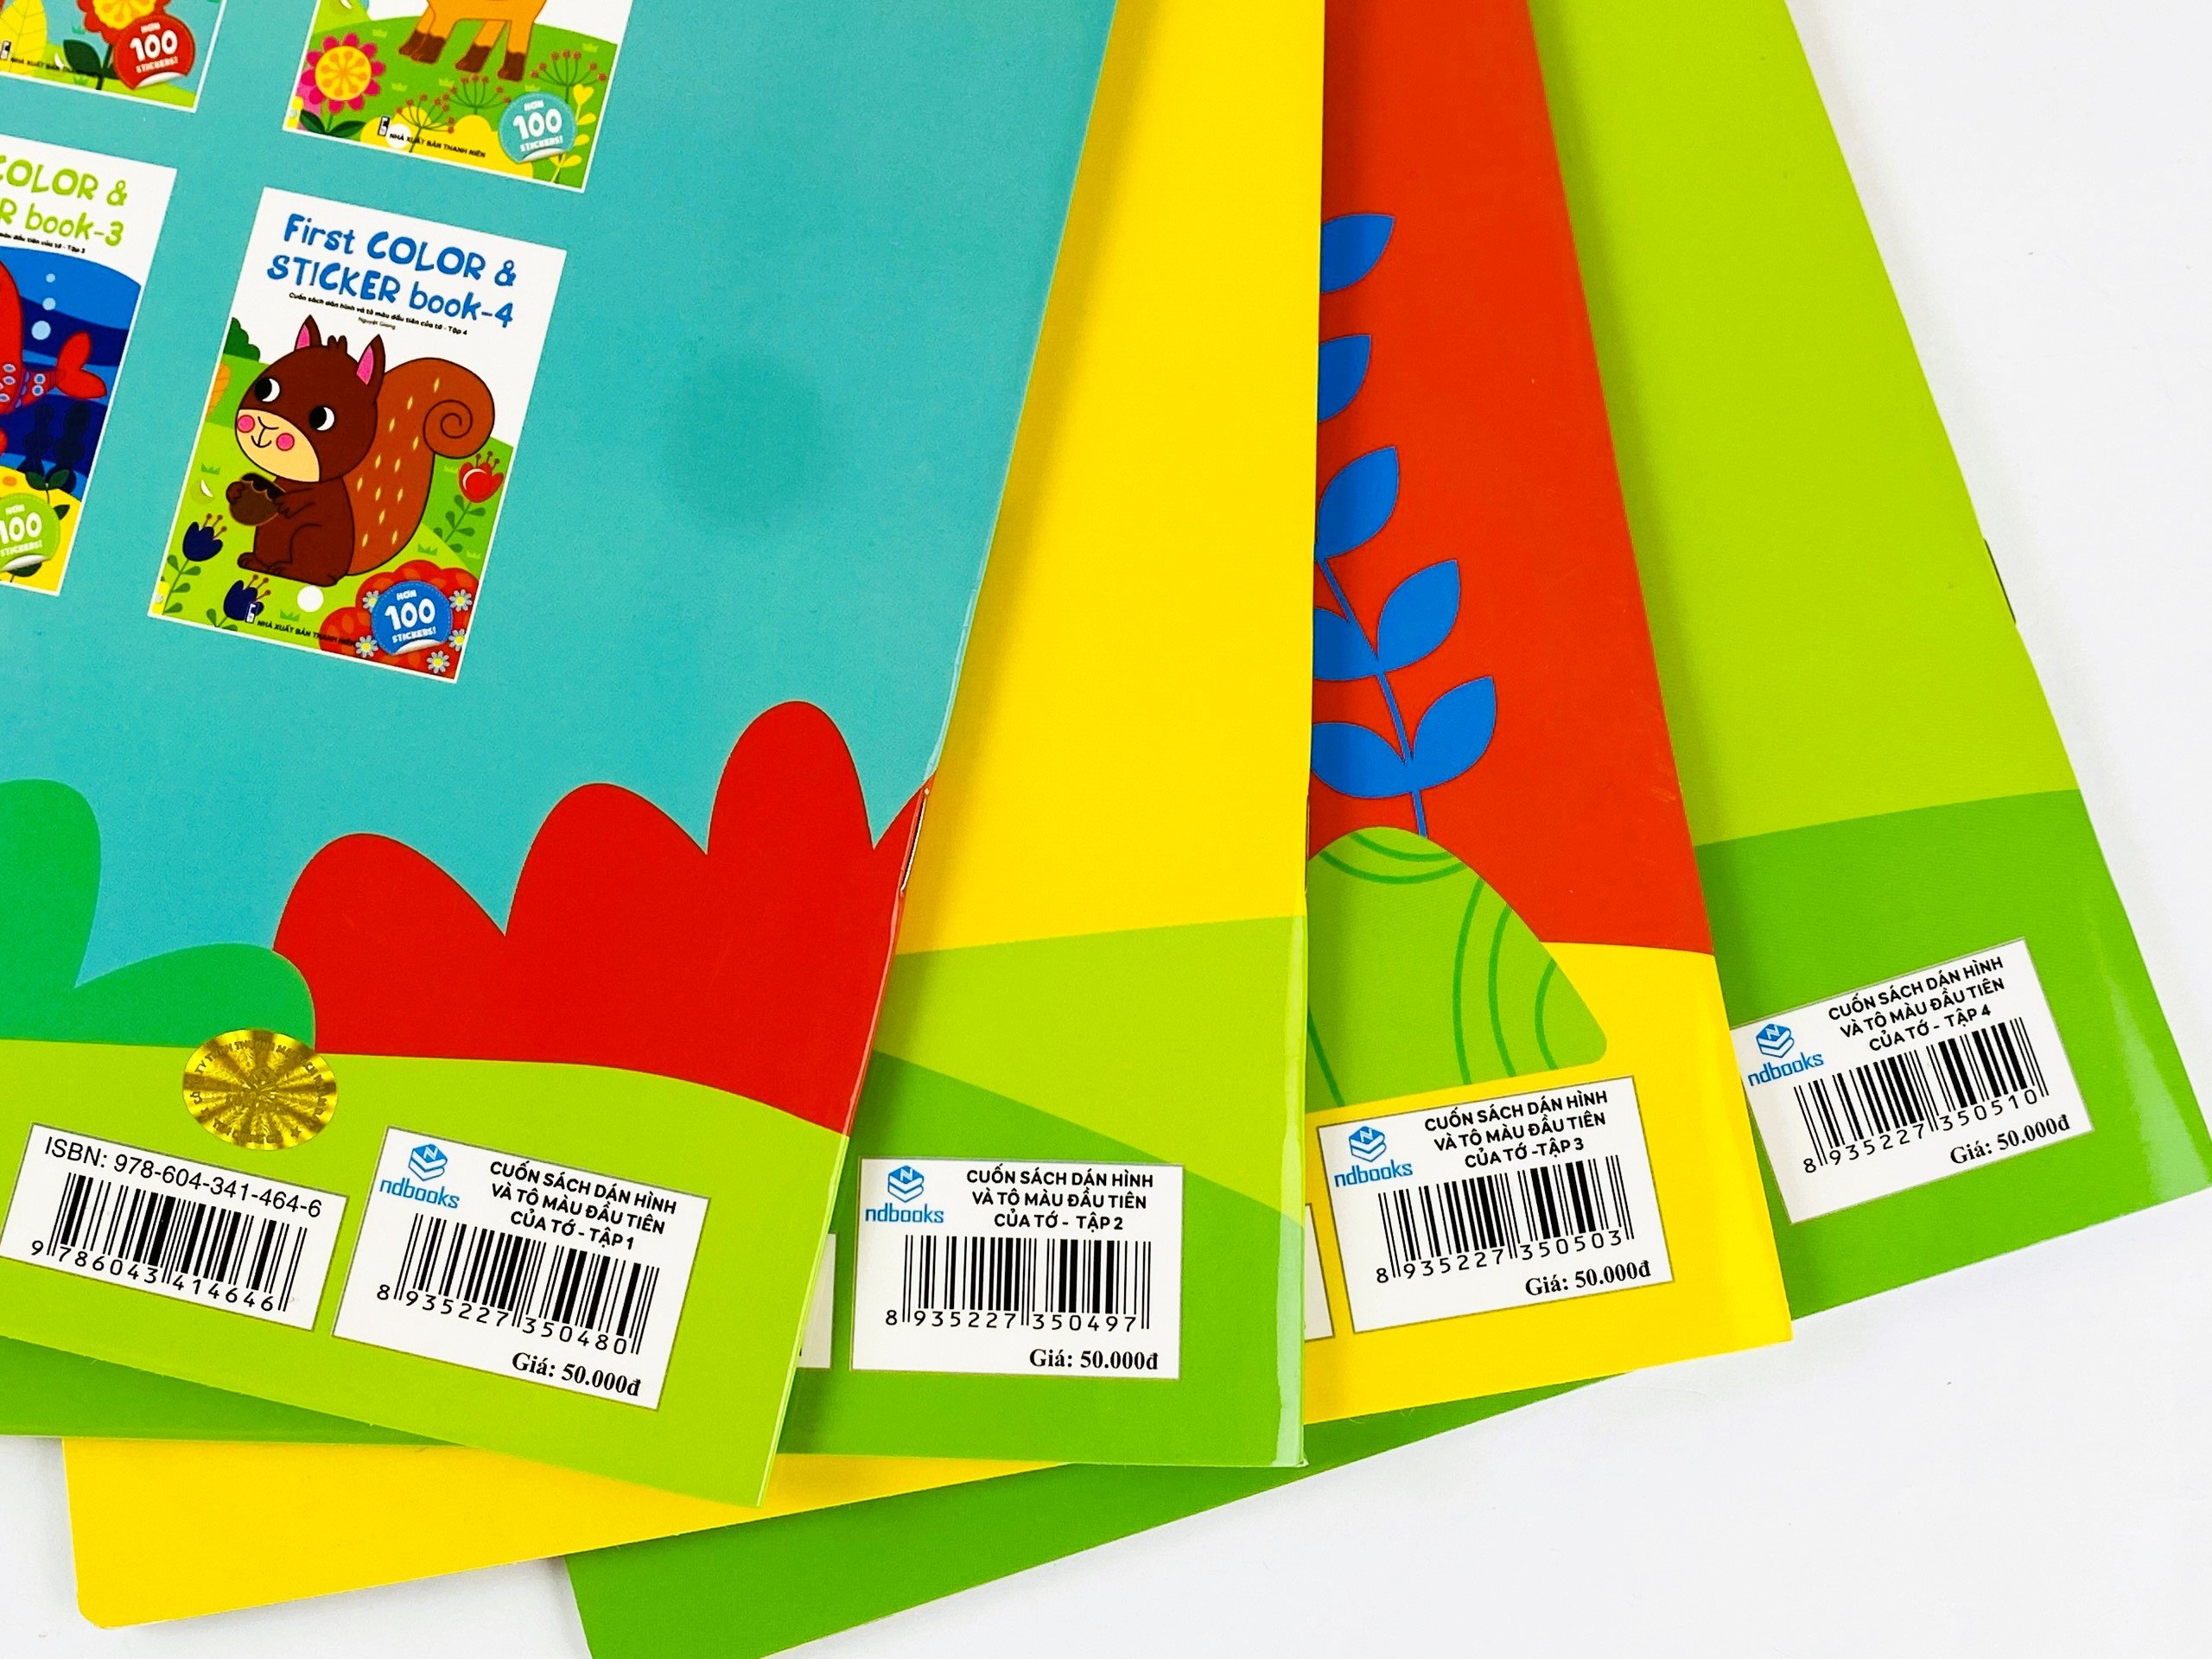 Sách - First Color & Sticker Book - Cuốn Sách Dán Hình Và Tô Màu Đầu Tiên Của Tớ - ndbooks